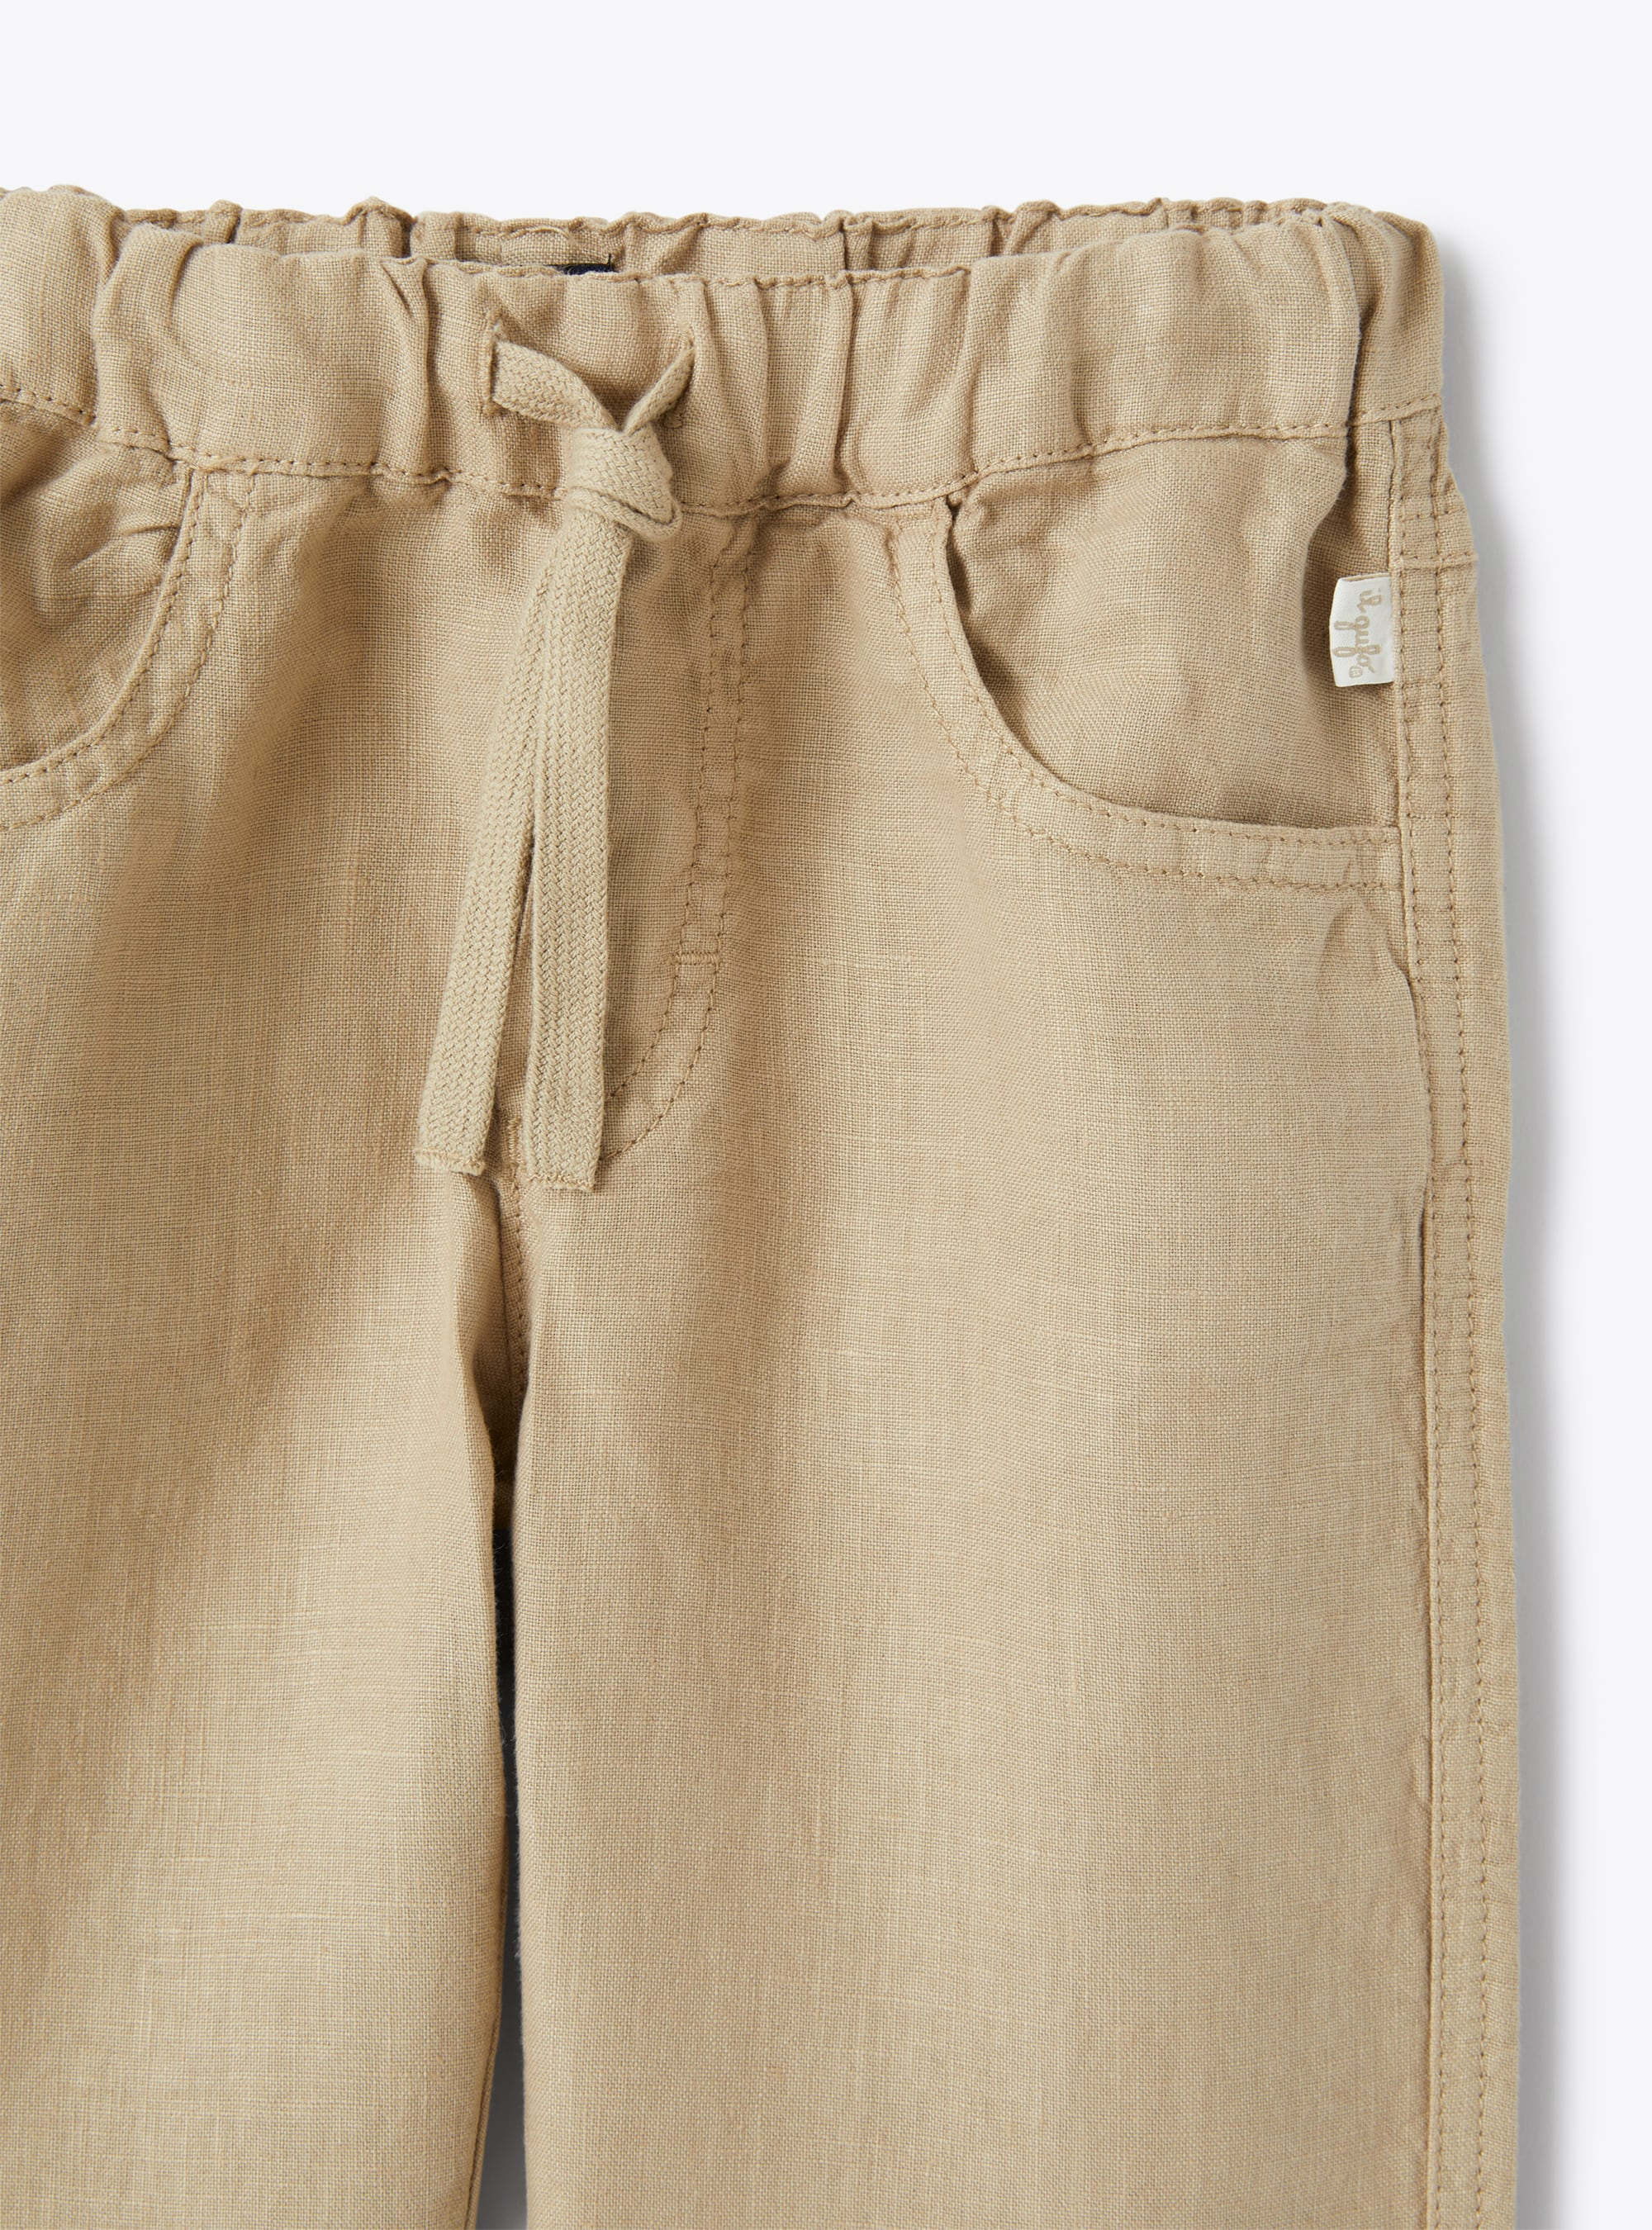 Drawstring trousers in beige linen - Beige | Il Gufo